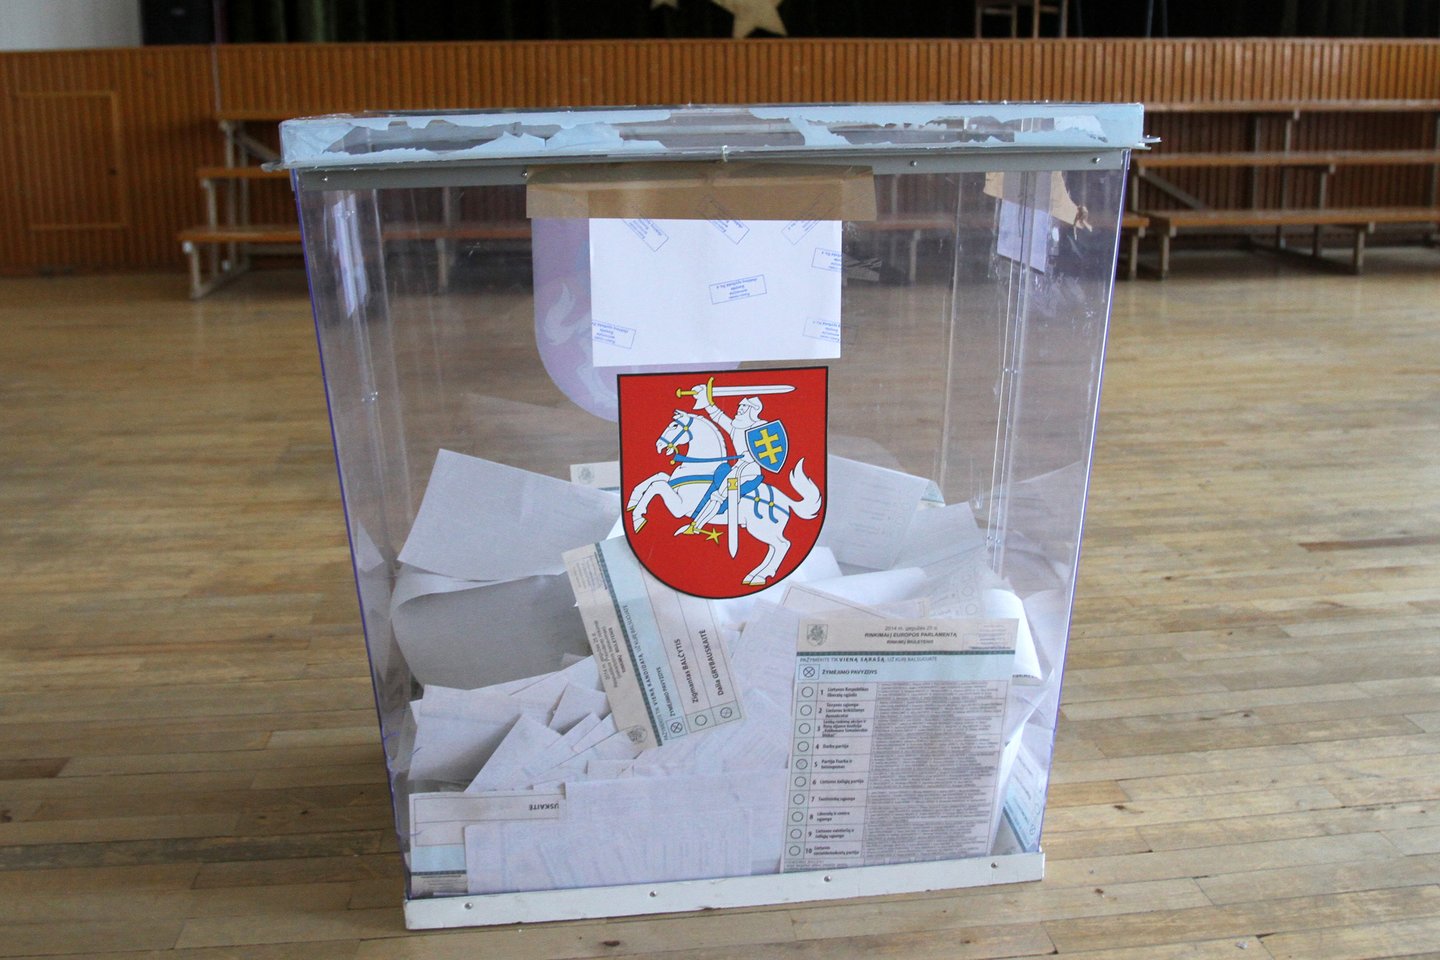  Balsuodami kauniečiai gali nusivilti, mat kandidatų sąsajų su Kaunu teks paieškoti.  <br> M.Patašiaus nuotr.